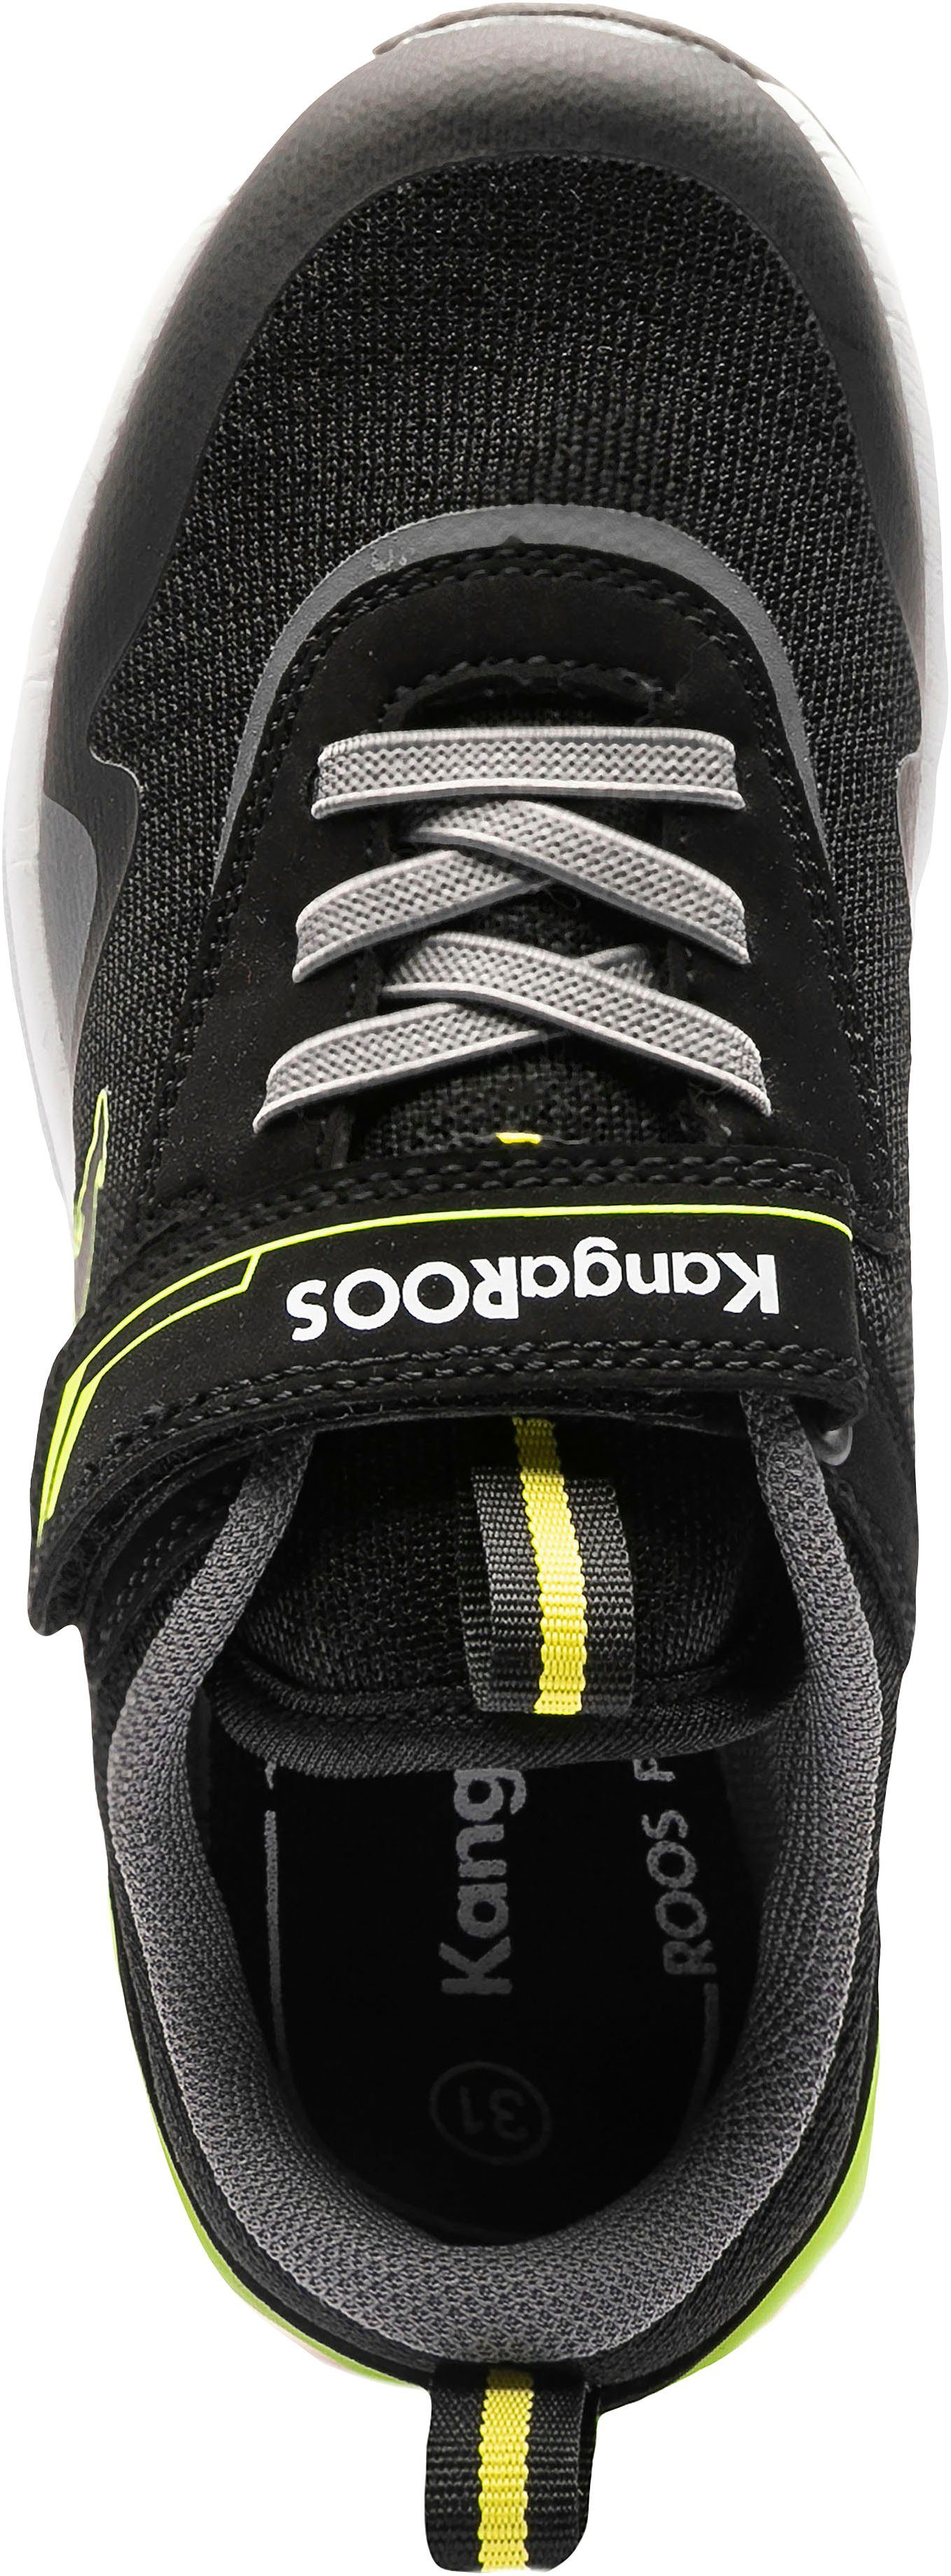 KangaROOS KD-Gym schwarz-gelb EV Sneaker Klettverschluss mit